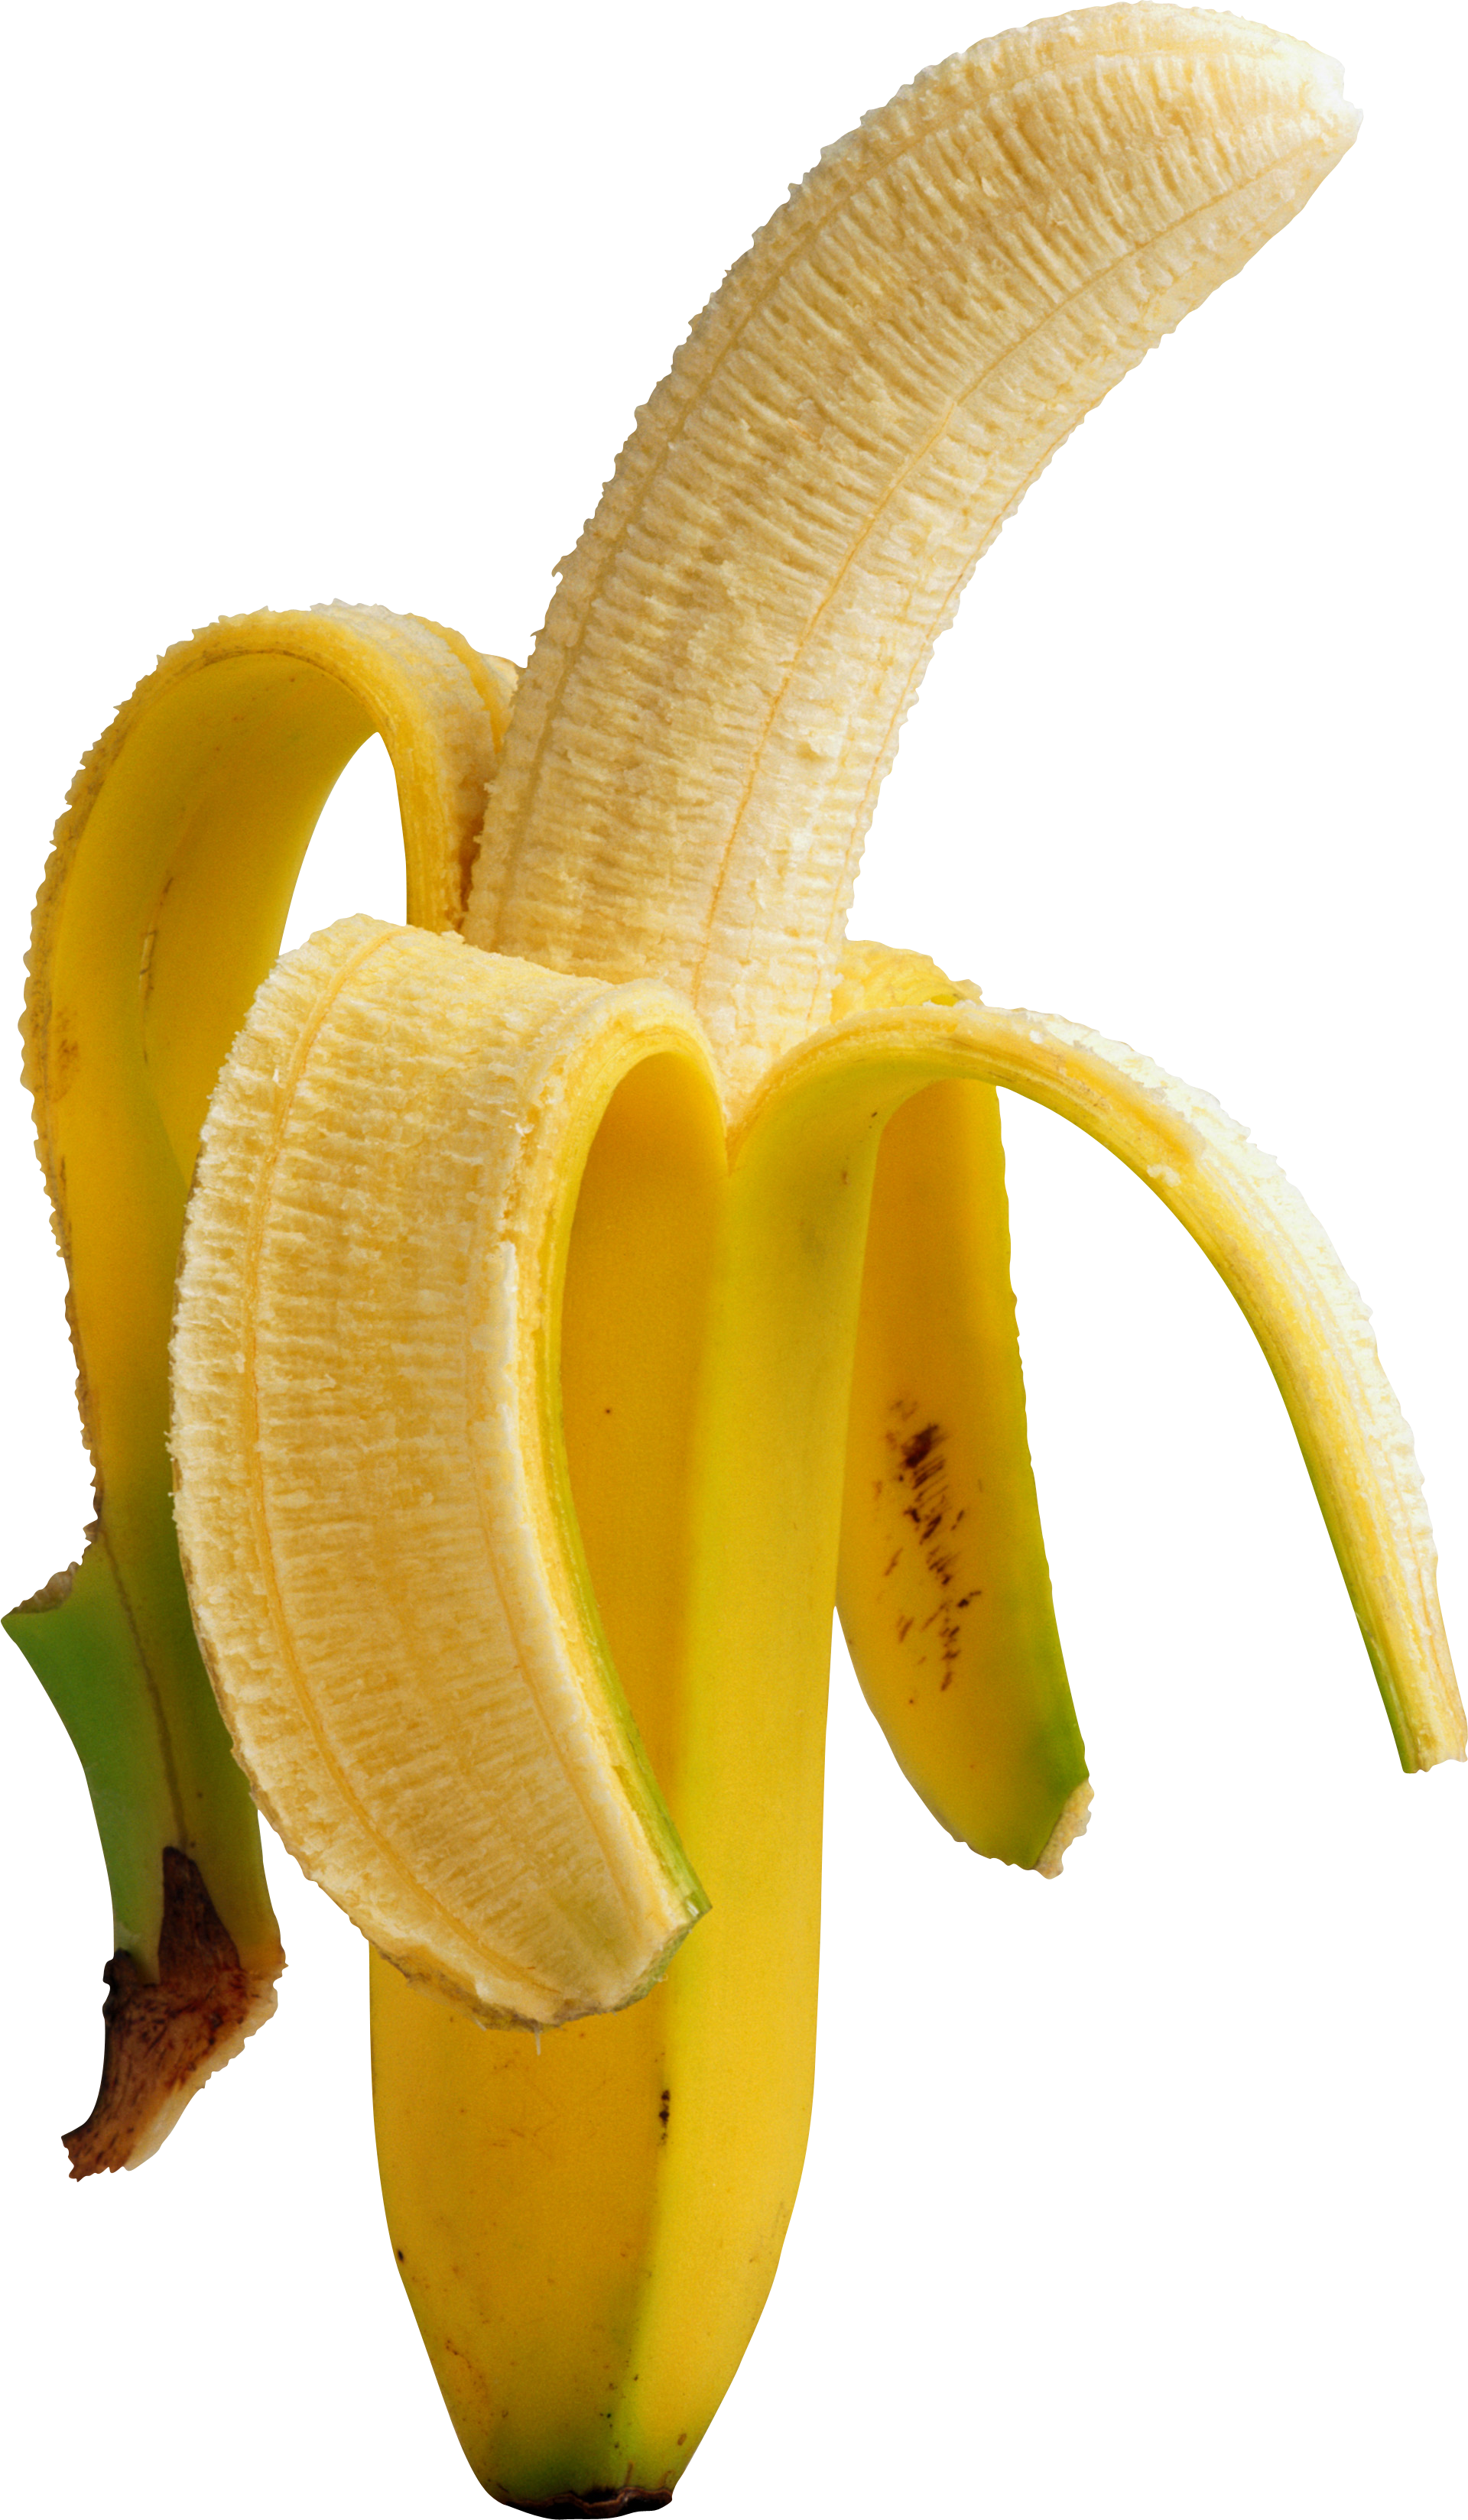 Pealed Banana